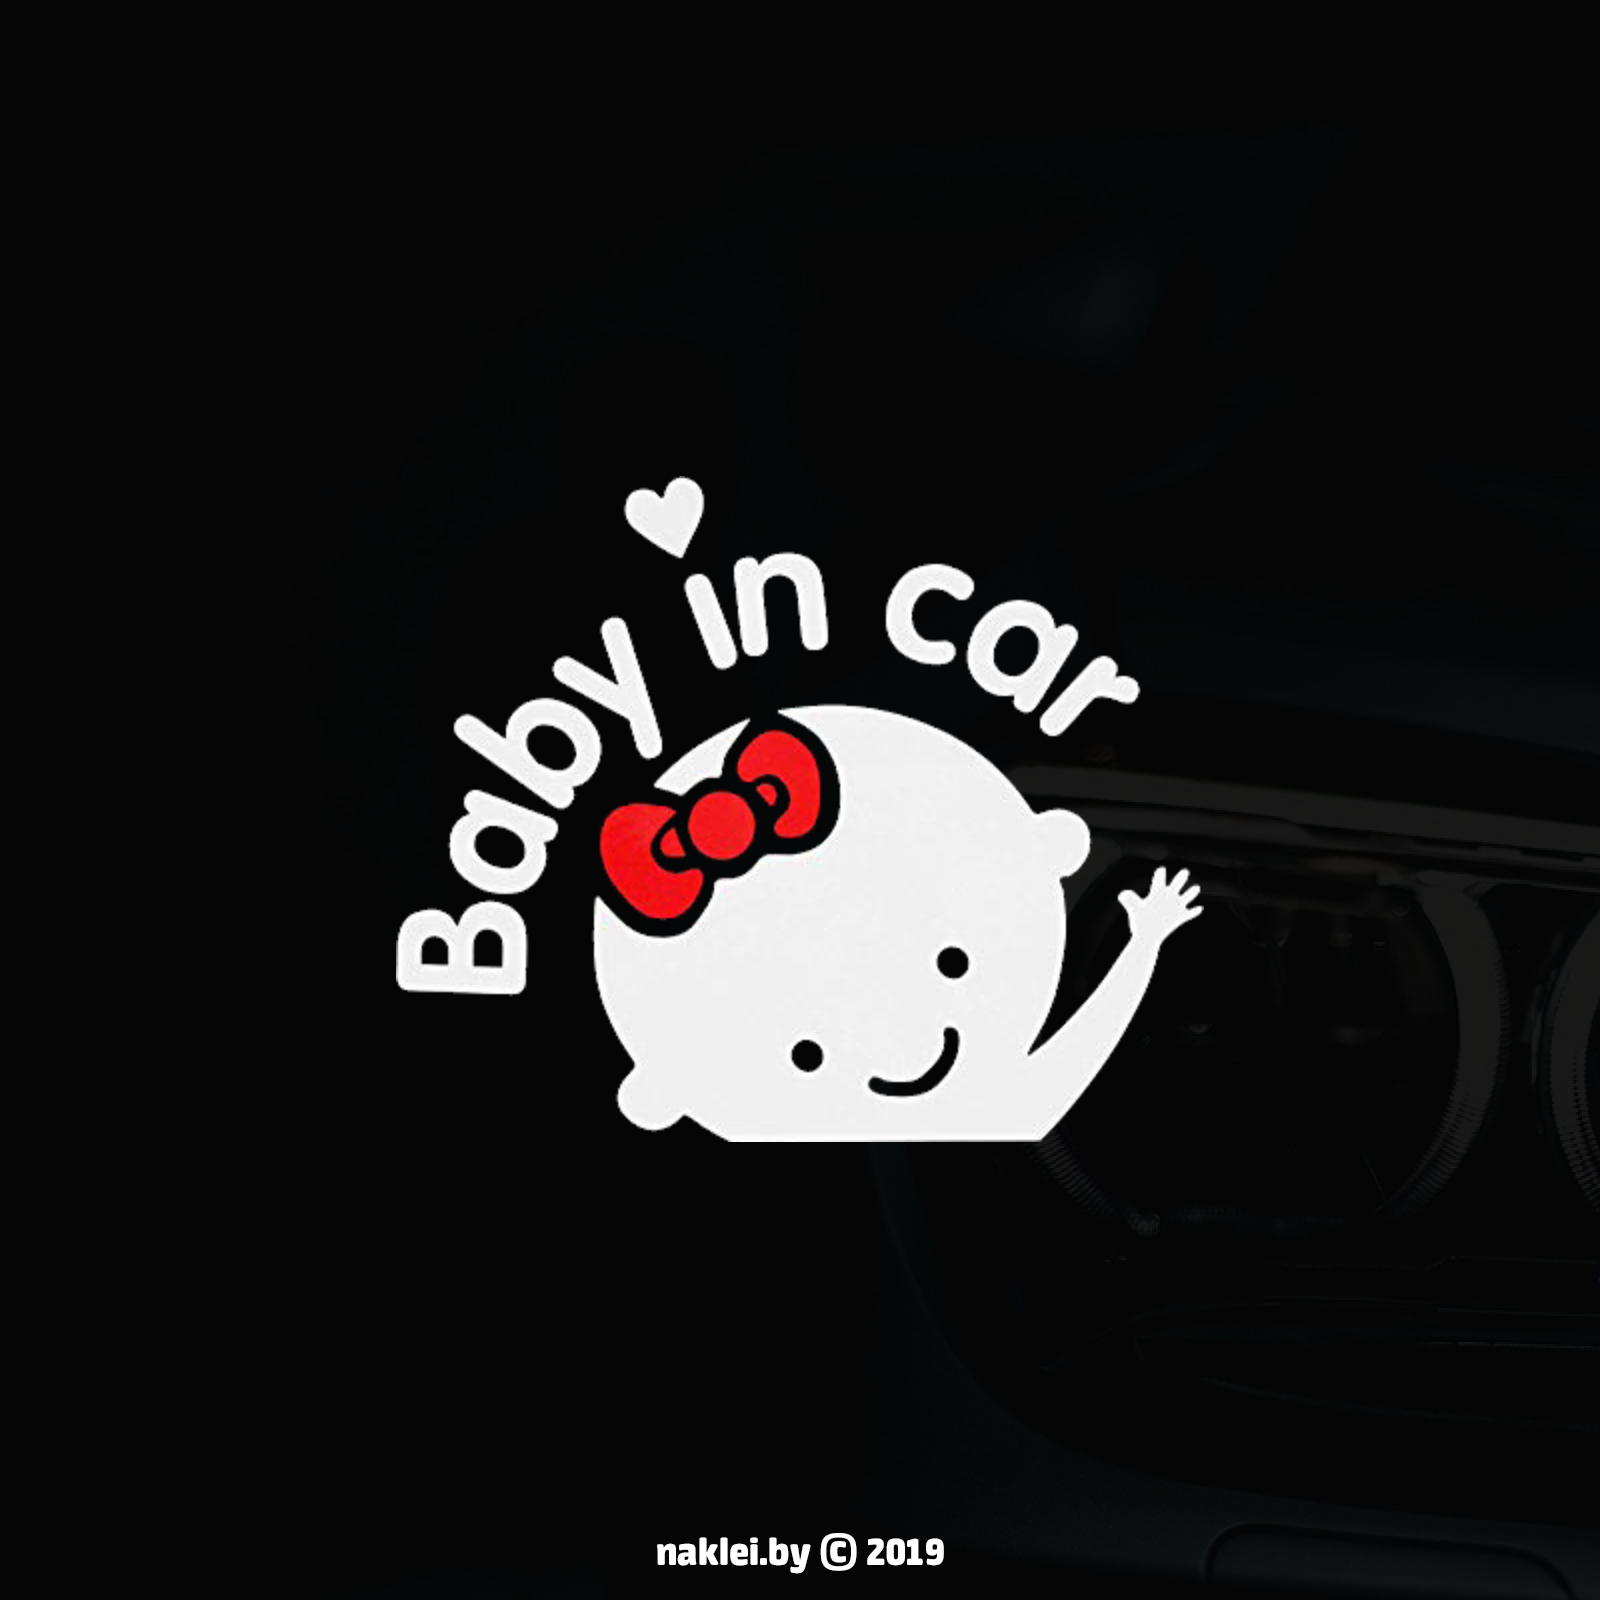 Наклейка Baby in car (Ребенок в машине) девочка